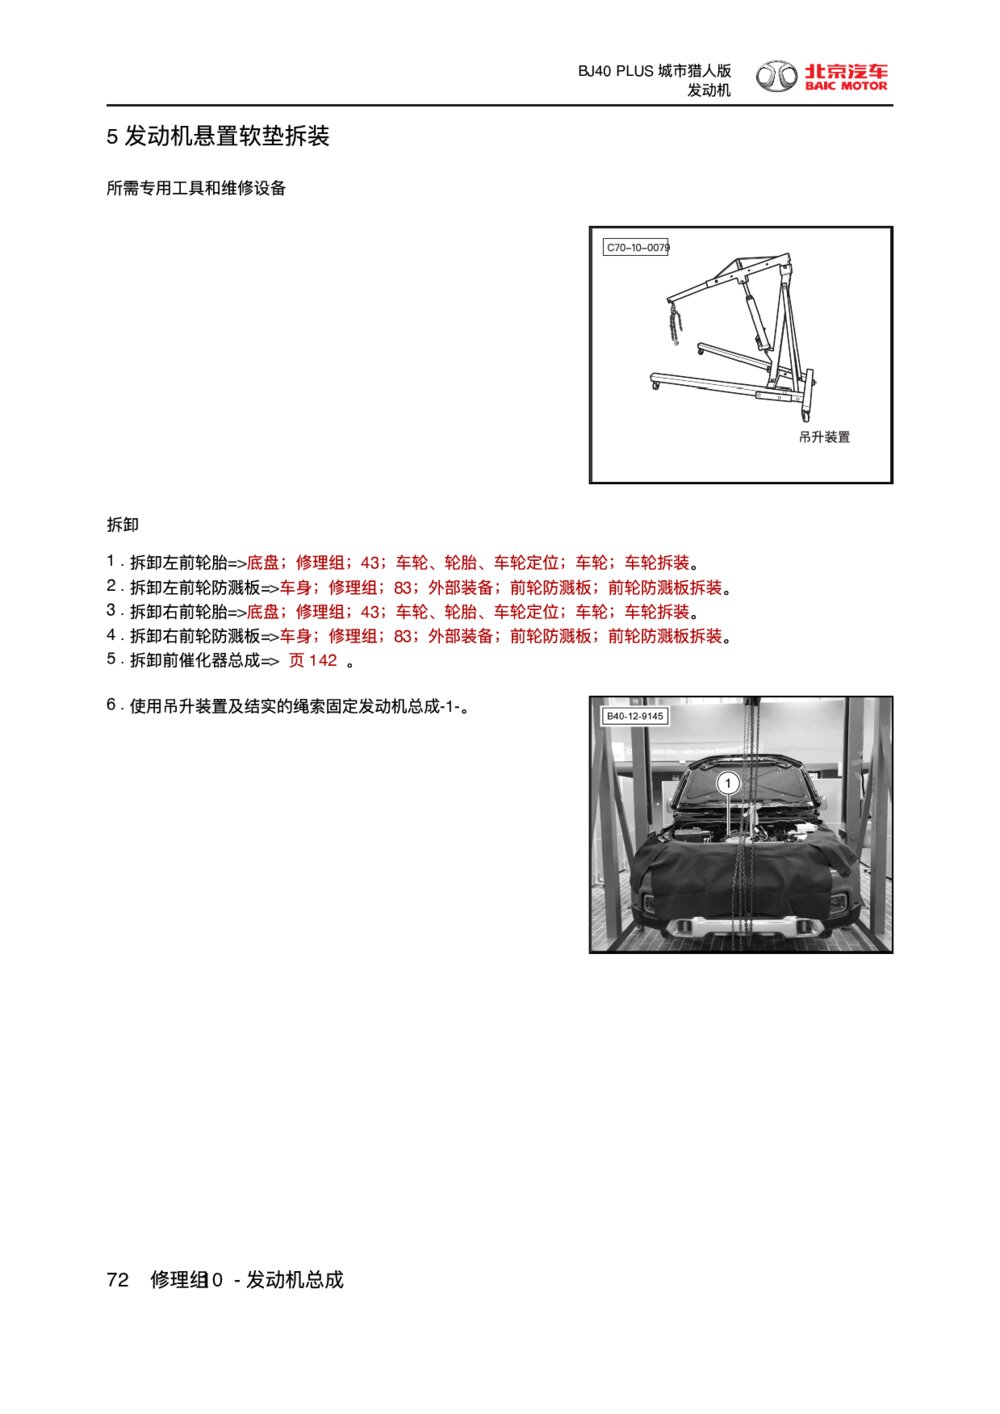 2018款北京BJ40 PLUS发动机悬置软垫拆装1